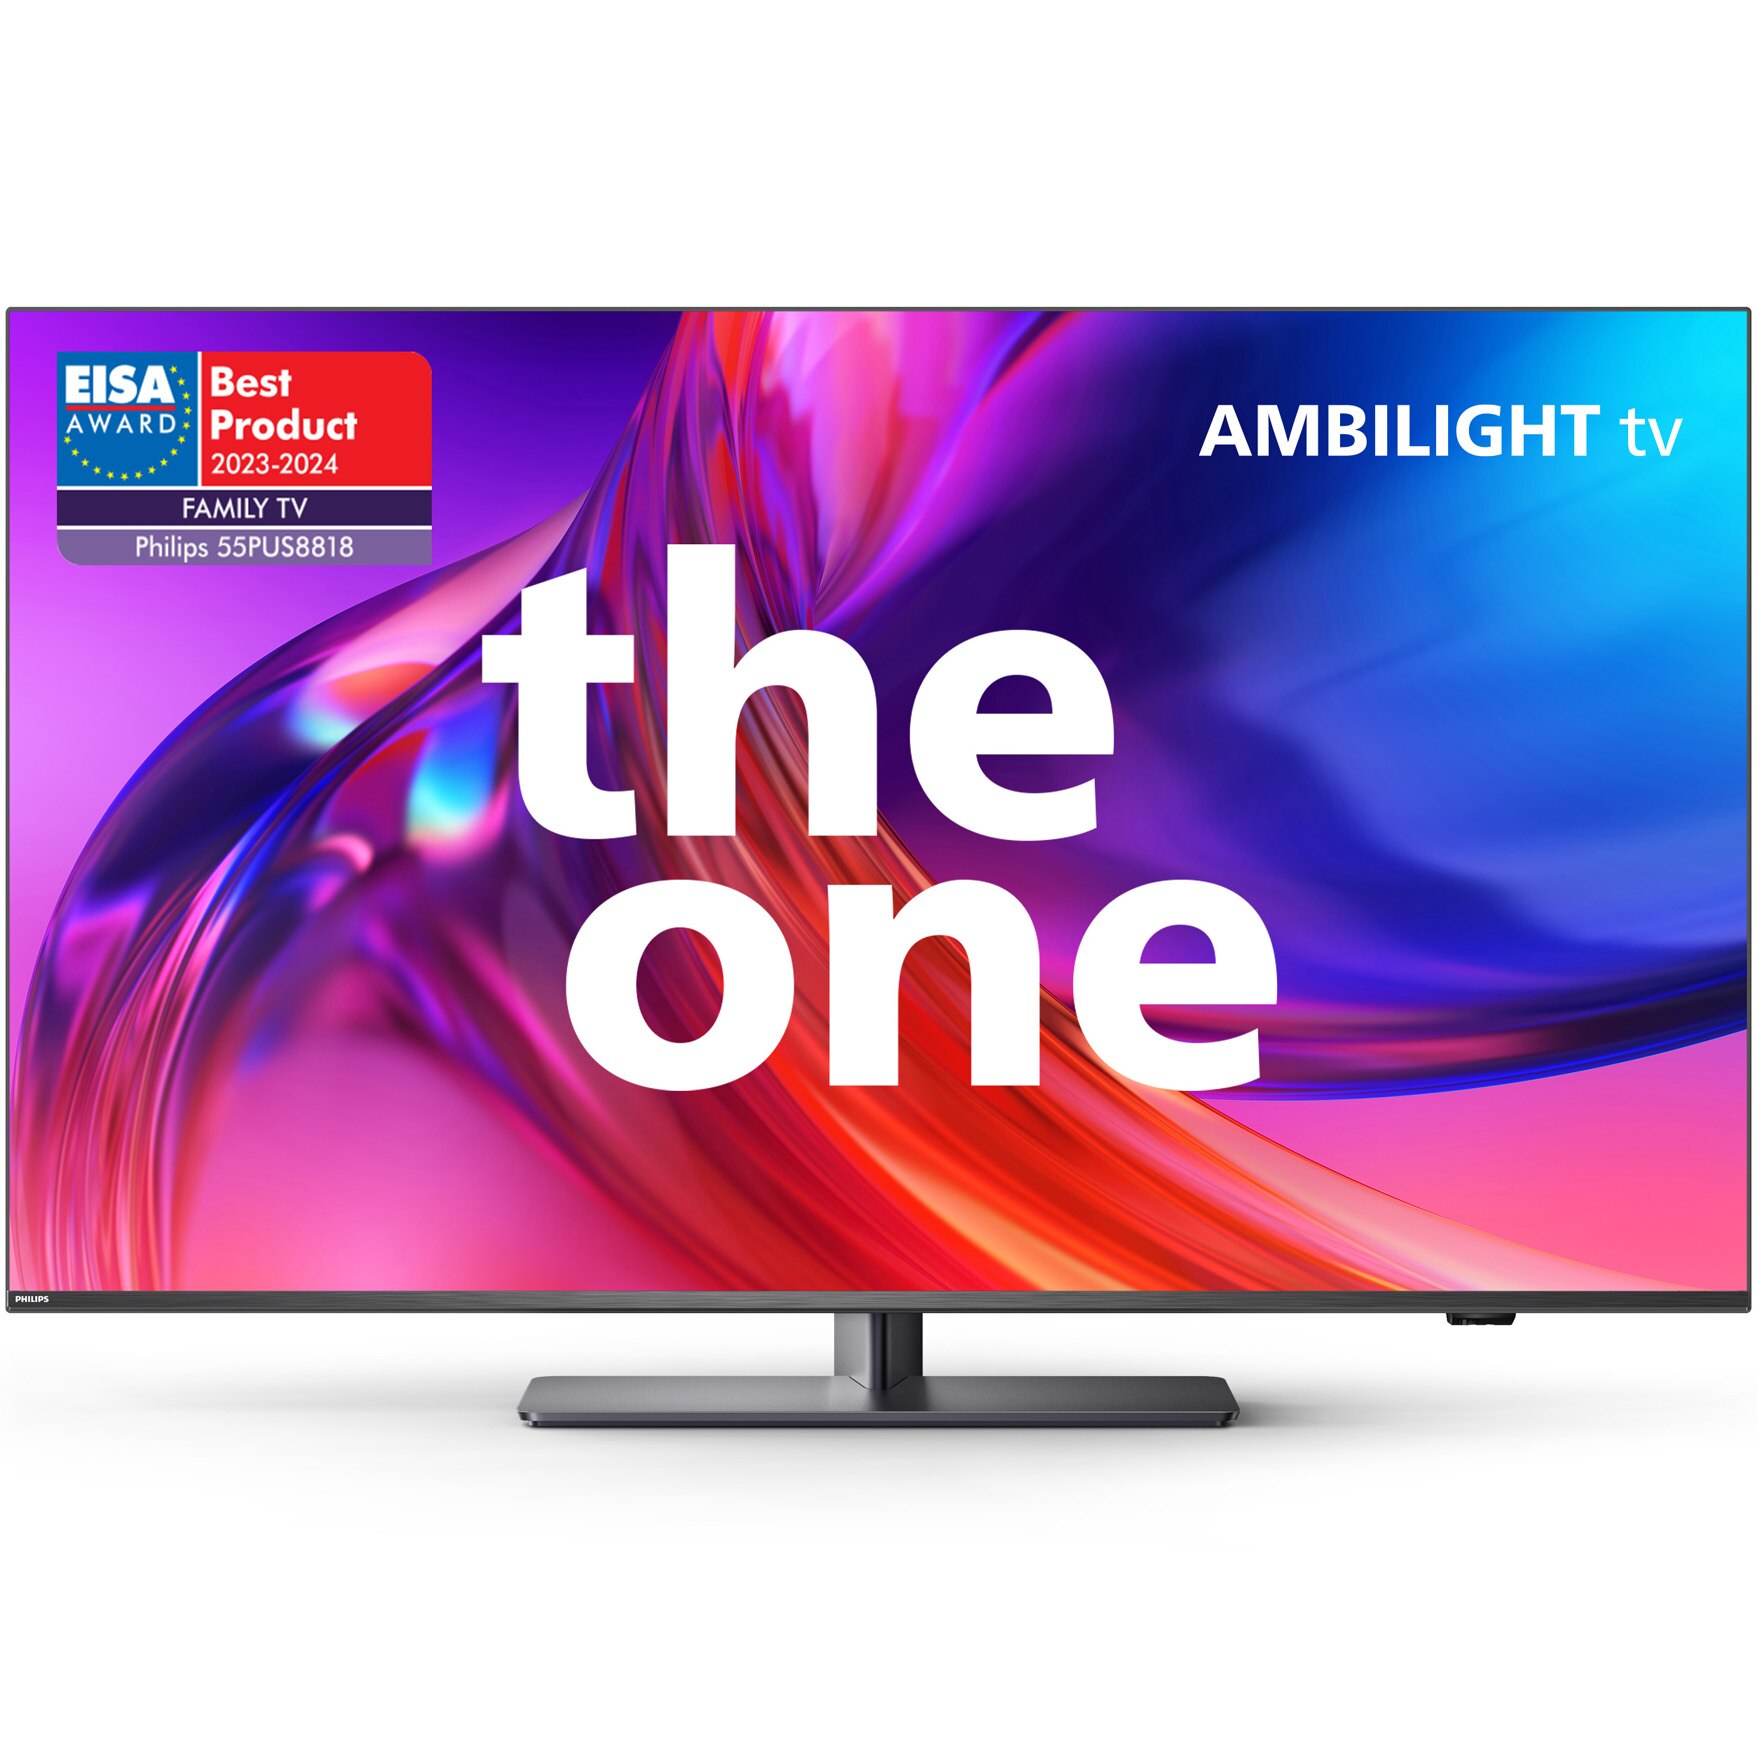 Fotografie Televizor Philips AMBILIGHT tv LED 55PUS8818, 139 cm, Google TV, 4K Ultra HD, 100 Hz, Clasa E (Model 2023)